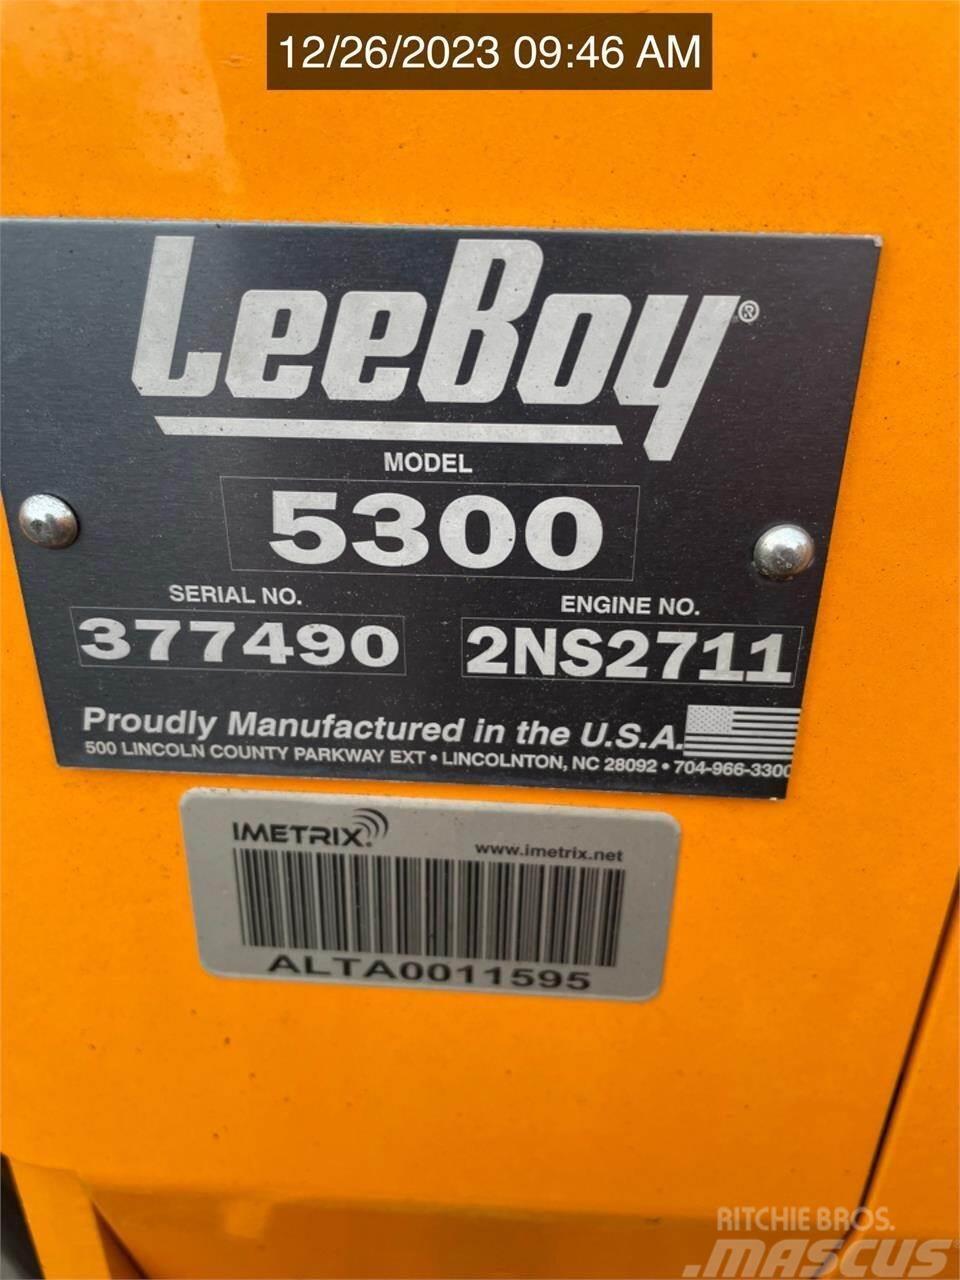 LeeBoy 5300 Asfalto klotuvai